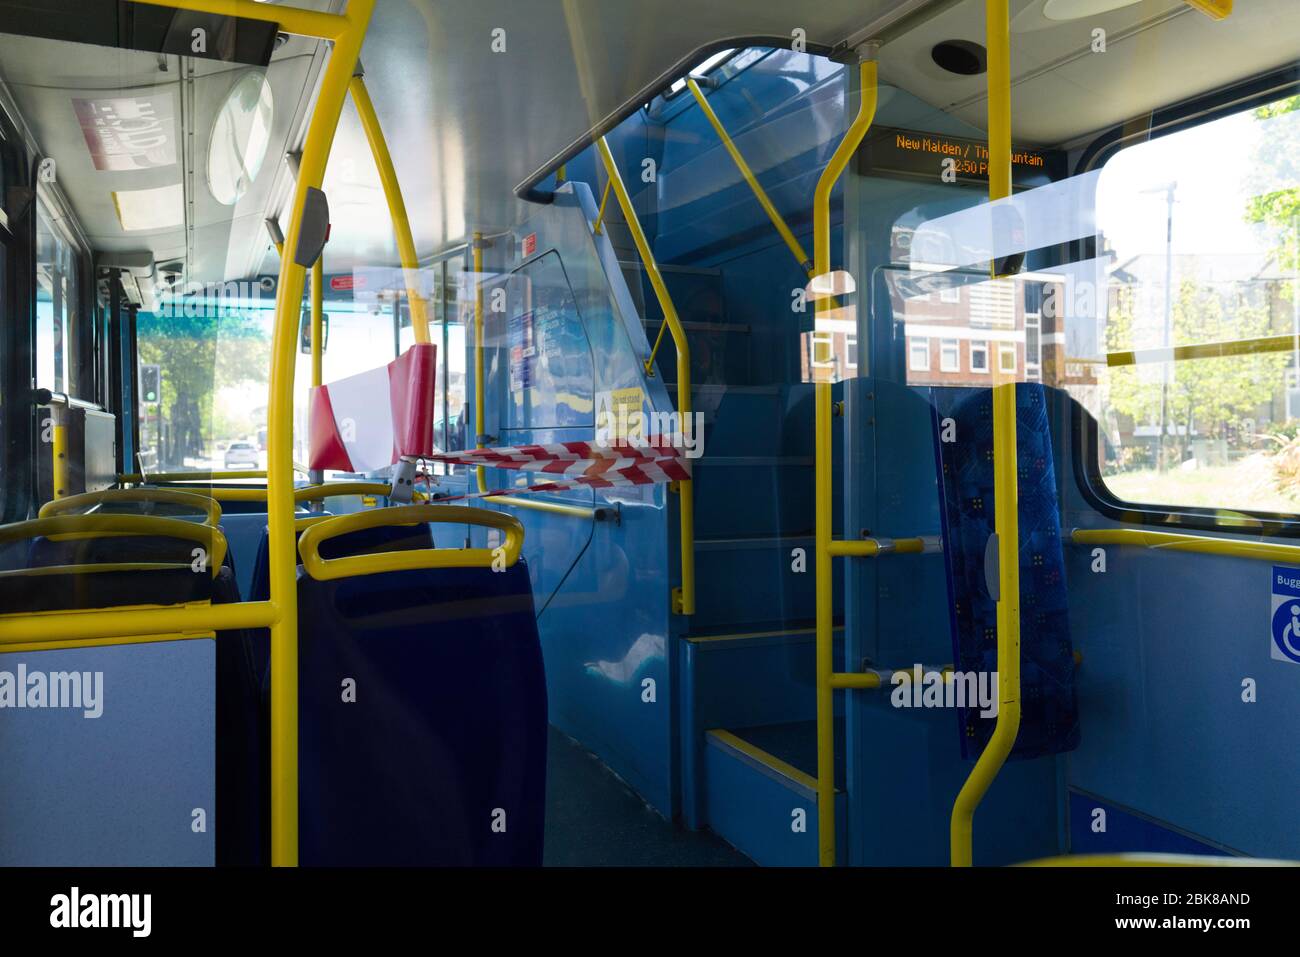 Se tapó fuera de la zona de autobuses que impiden a los pasajeros sentarse junto a los conductores de autobuses. Foto de stock